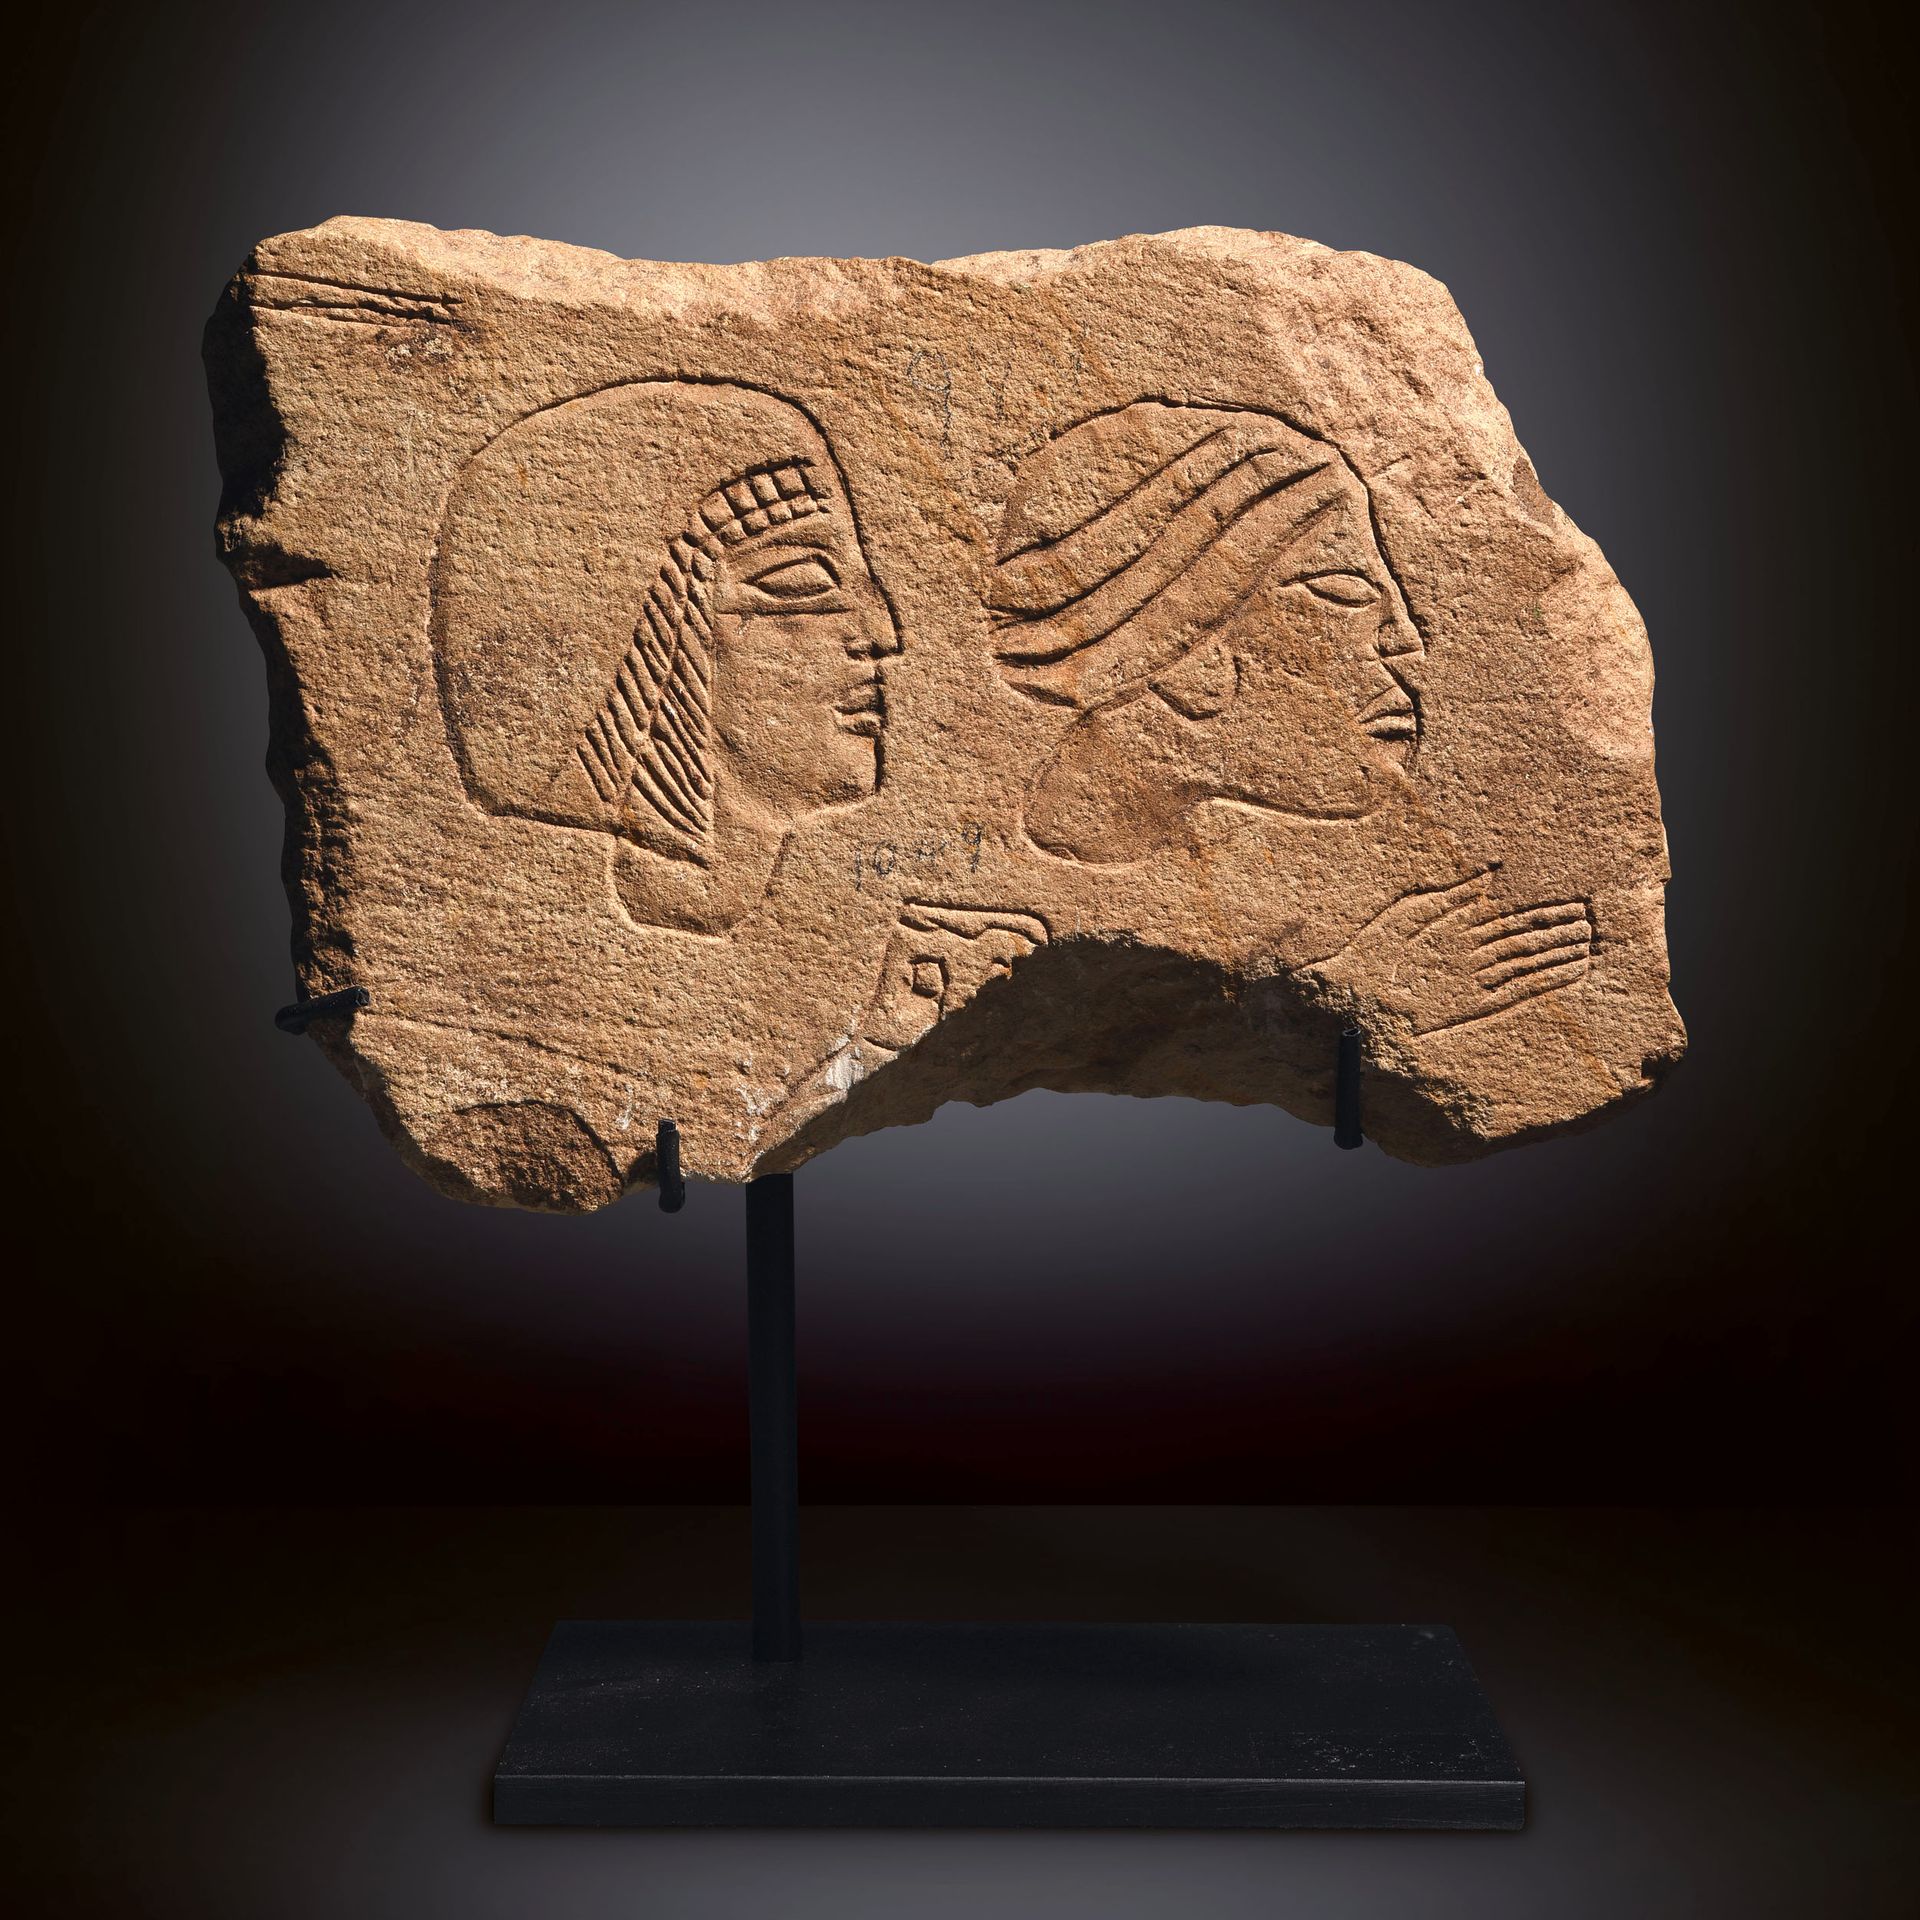 Null GRAFFITO

埃及，新王国，18世纪末-19世纪初的王朝，公元前14世纪中期

石灰石。2个发掘清单编号，其中一个清晰可见 "1049"。

尺&hellip;